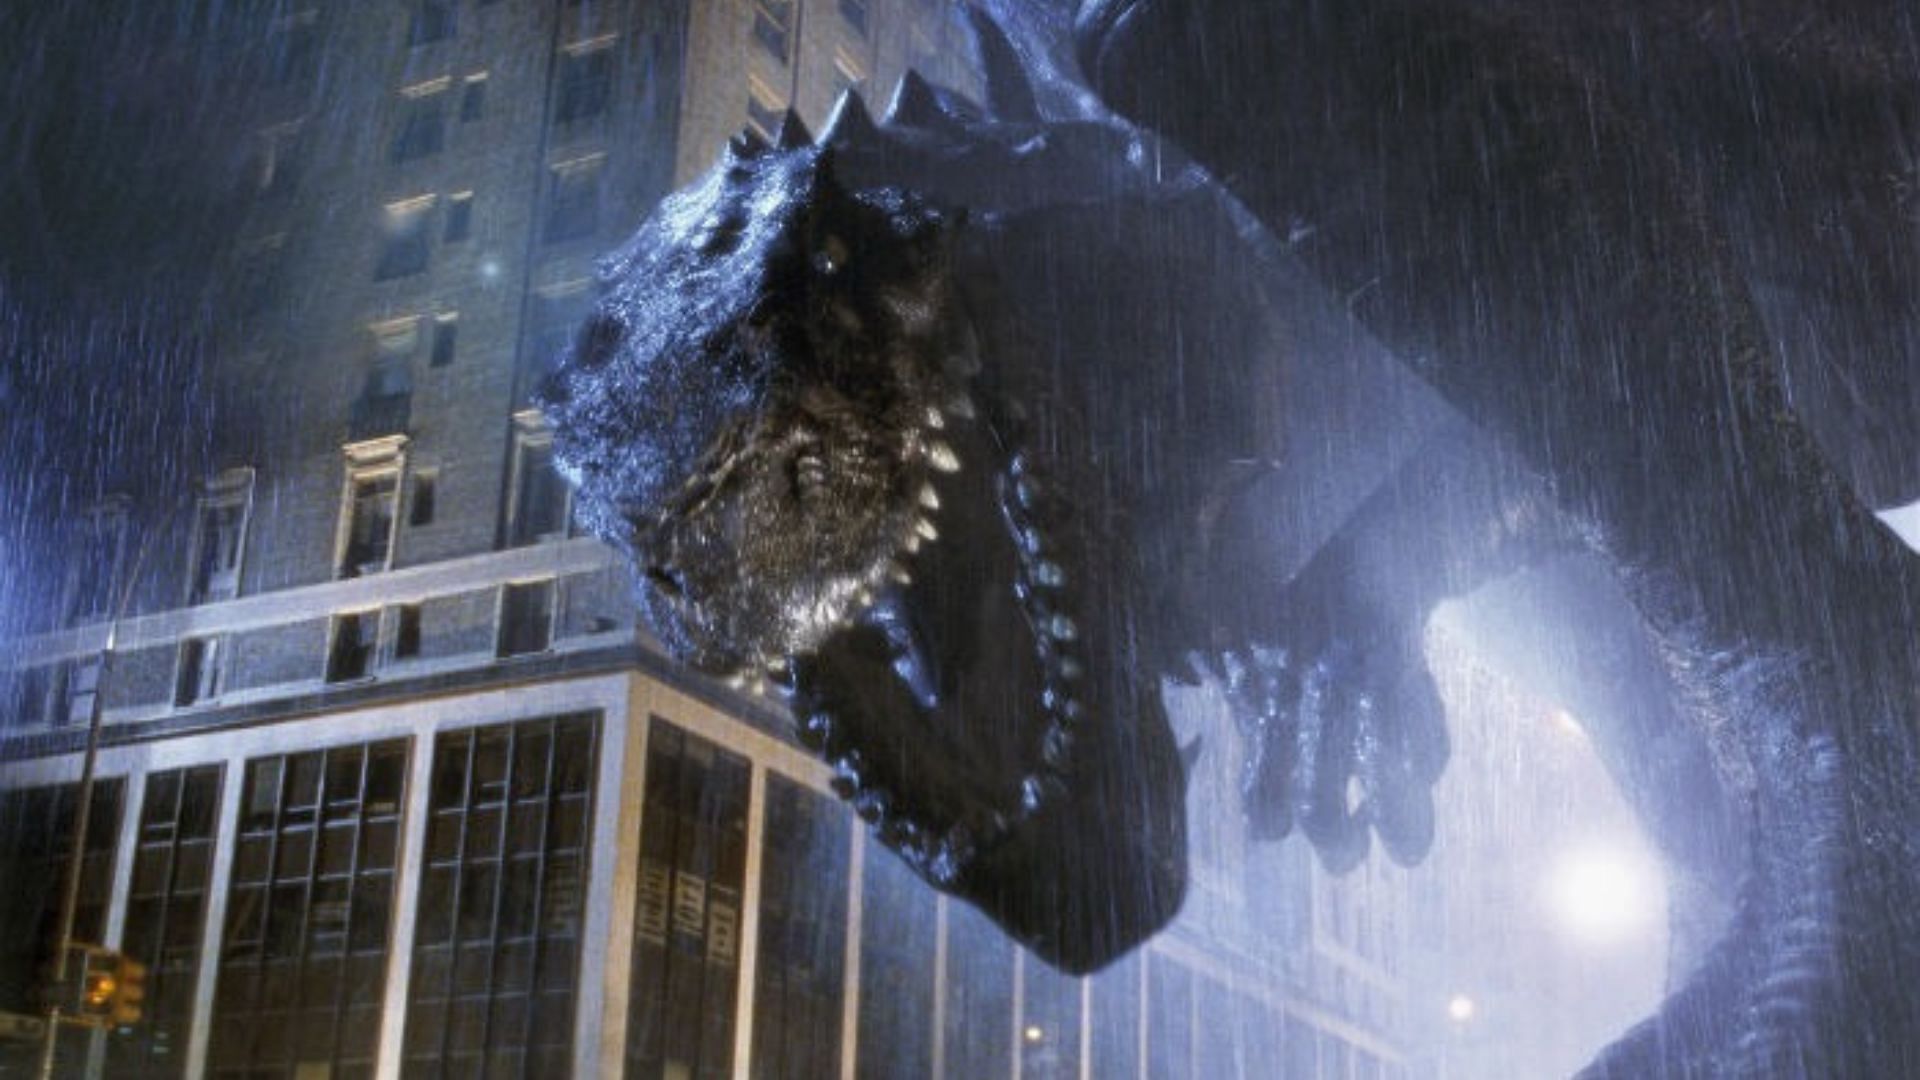 Godzilla vs. Kong (2021) - IMDb